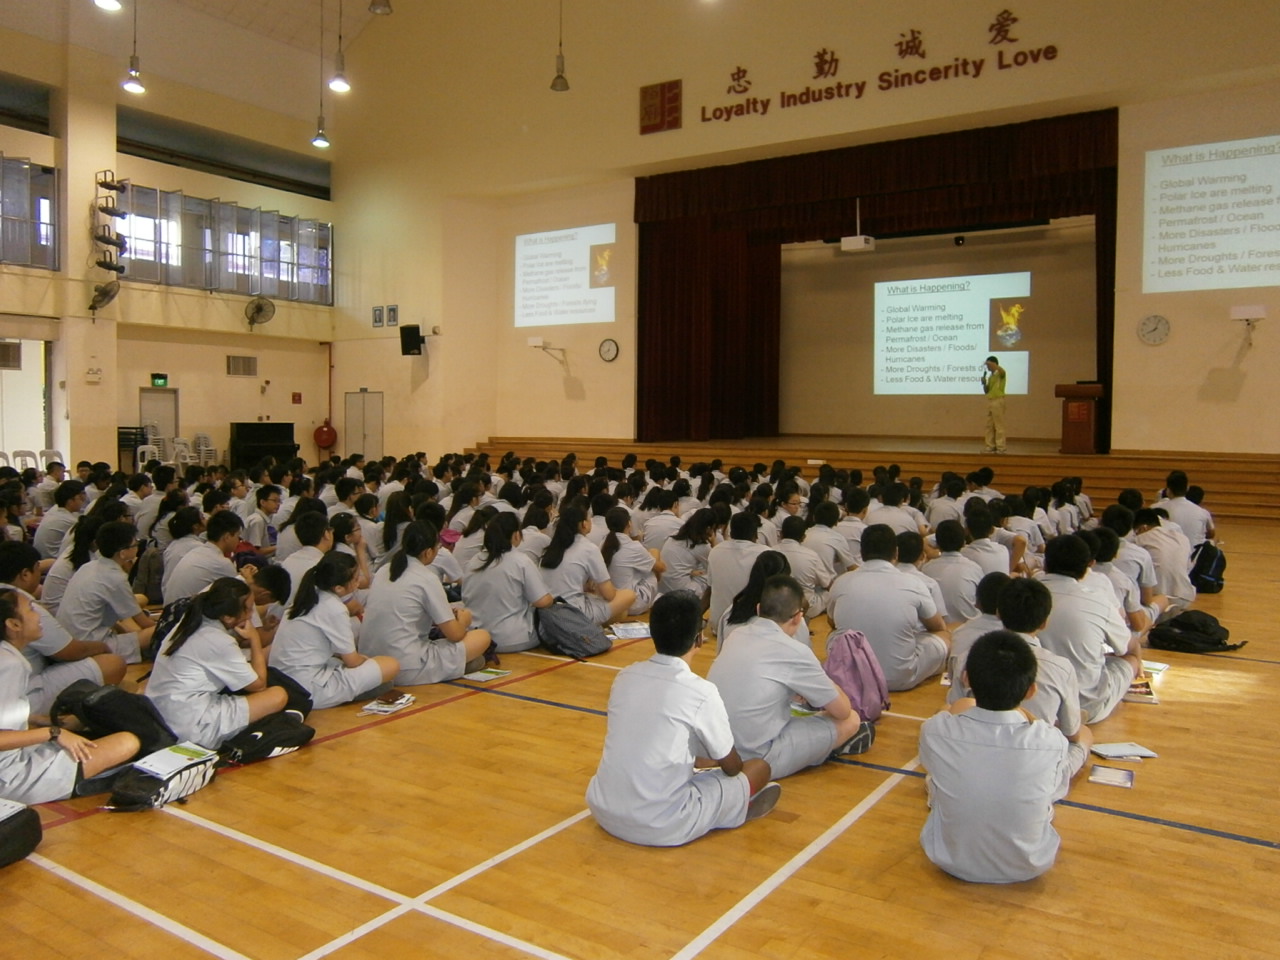 SOS Global warming: Assembly Talk @ Jurong Secondary (21 Jul)